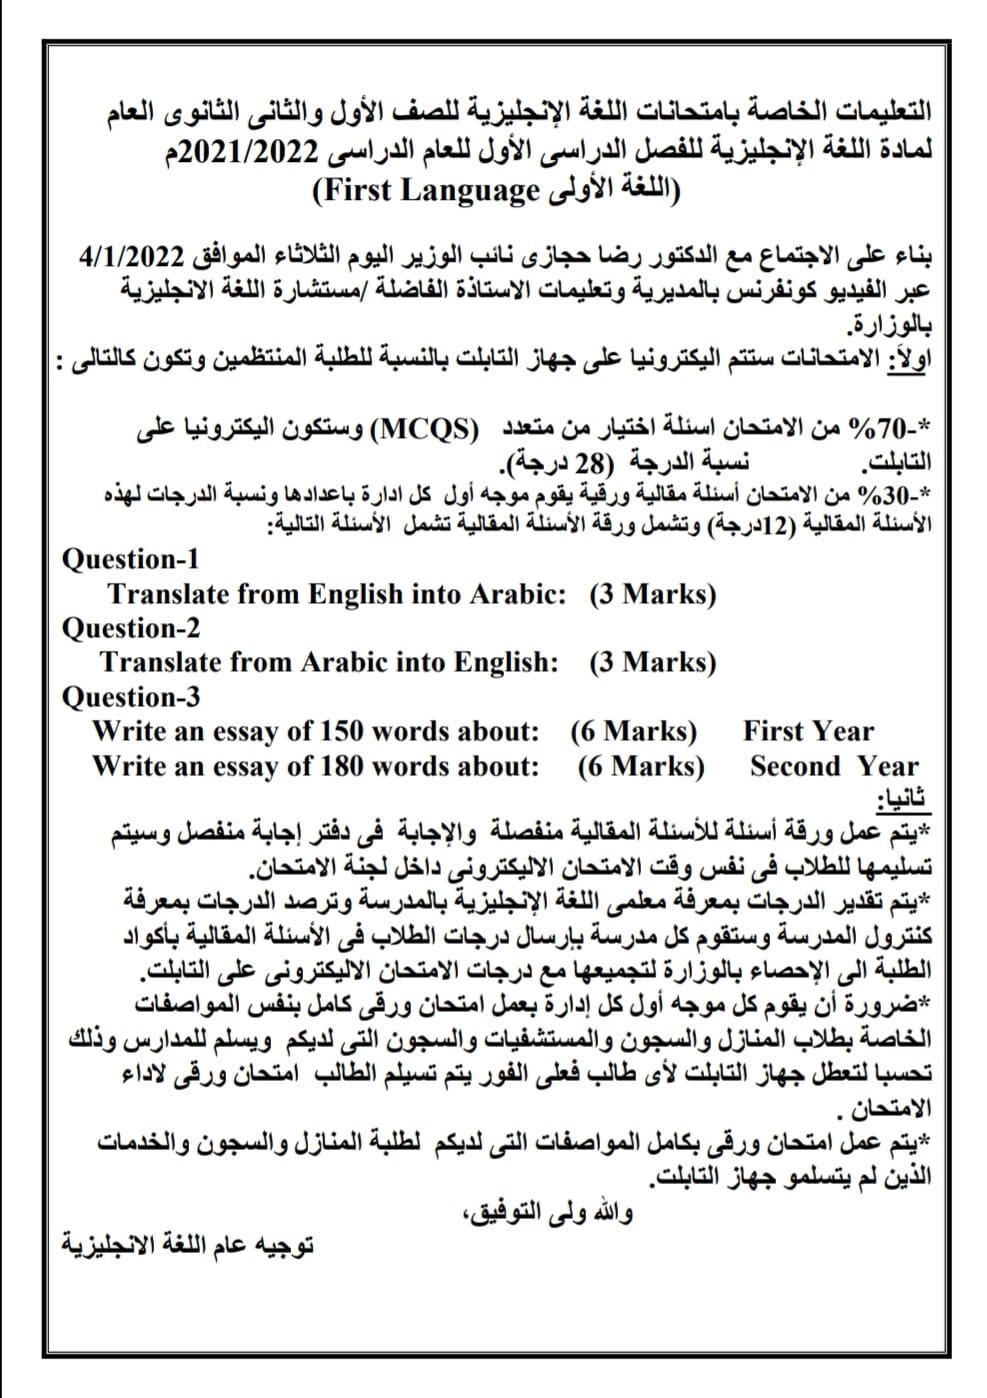 مواصفات الامتحان الورقي والالكتروني لمادة اللغه الانجليزيه وتوزيع الدرجات لـ 1 و 2 ثانوي 746